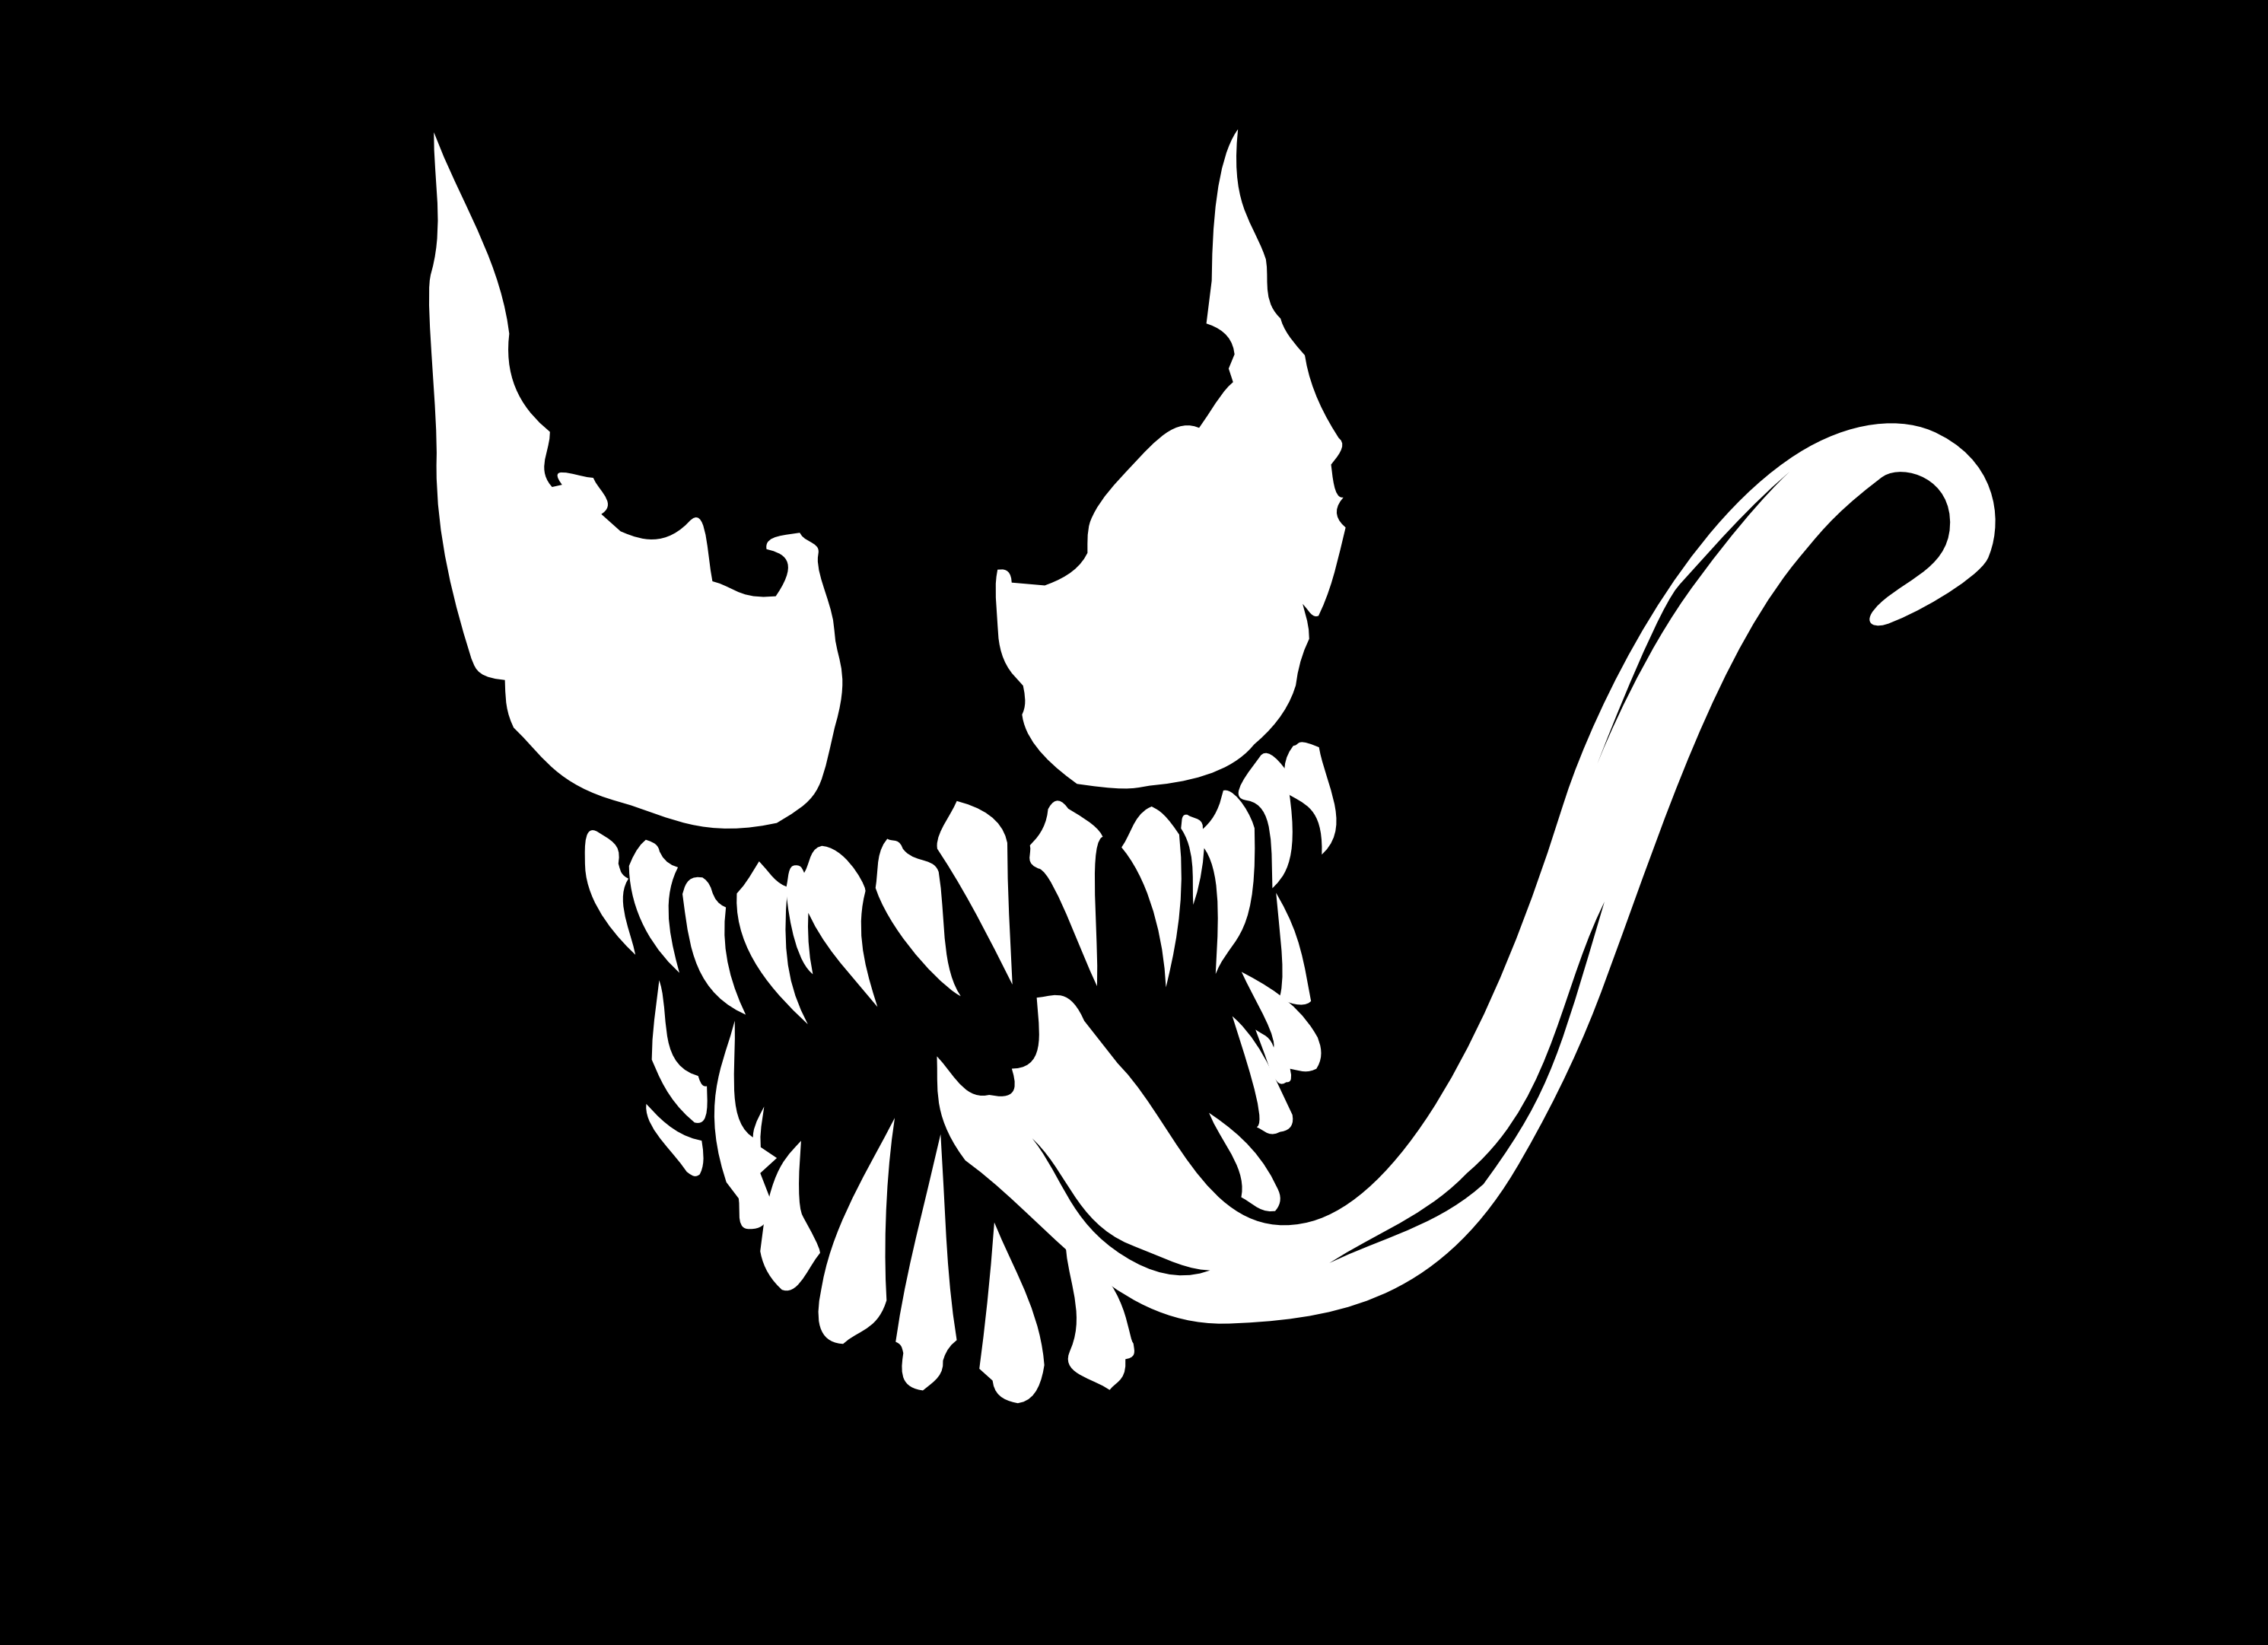 venom-logo-wallpapers-on-wallpaperdog